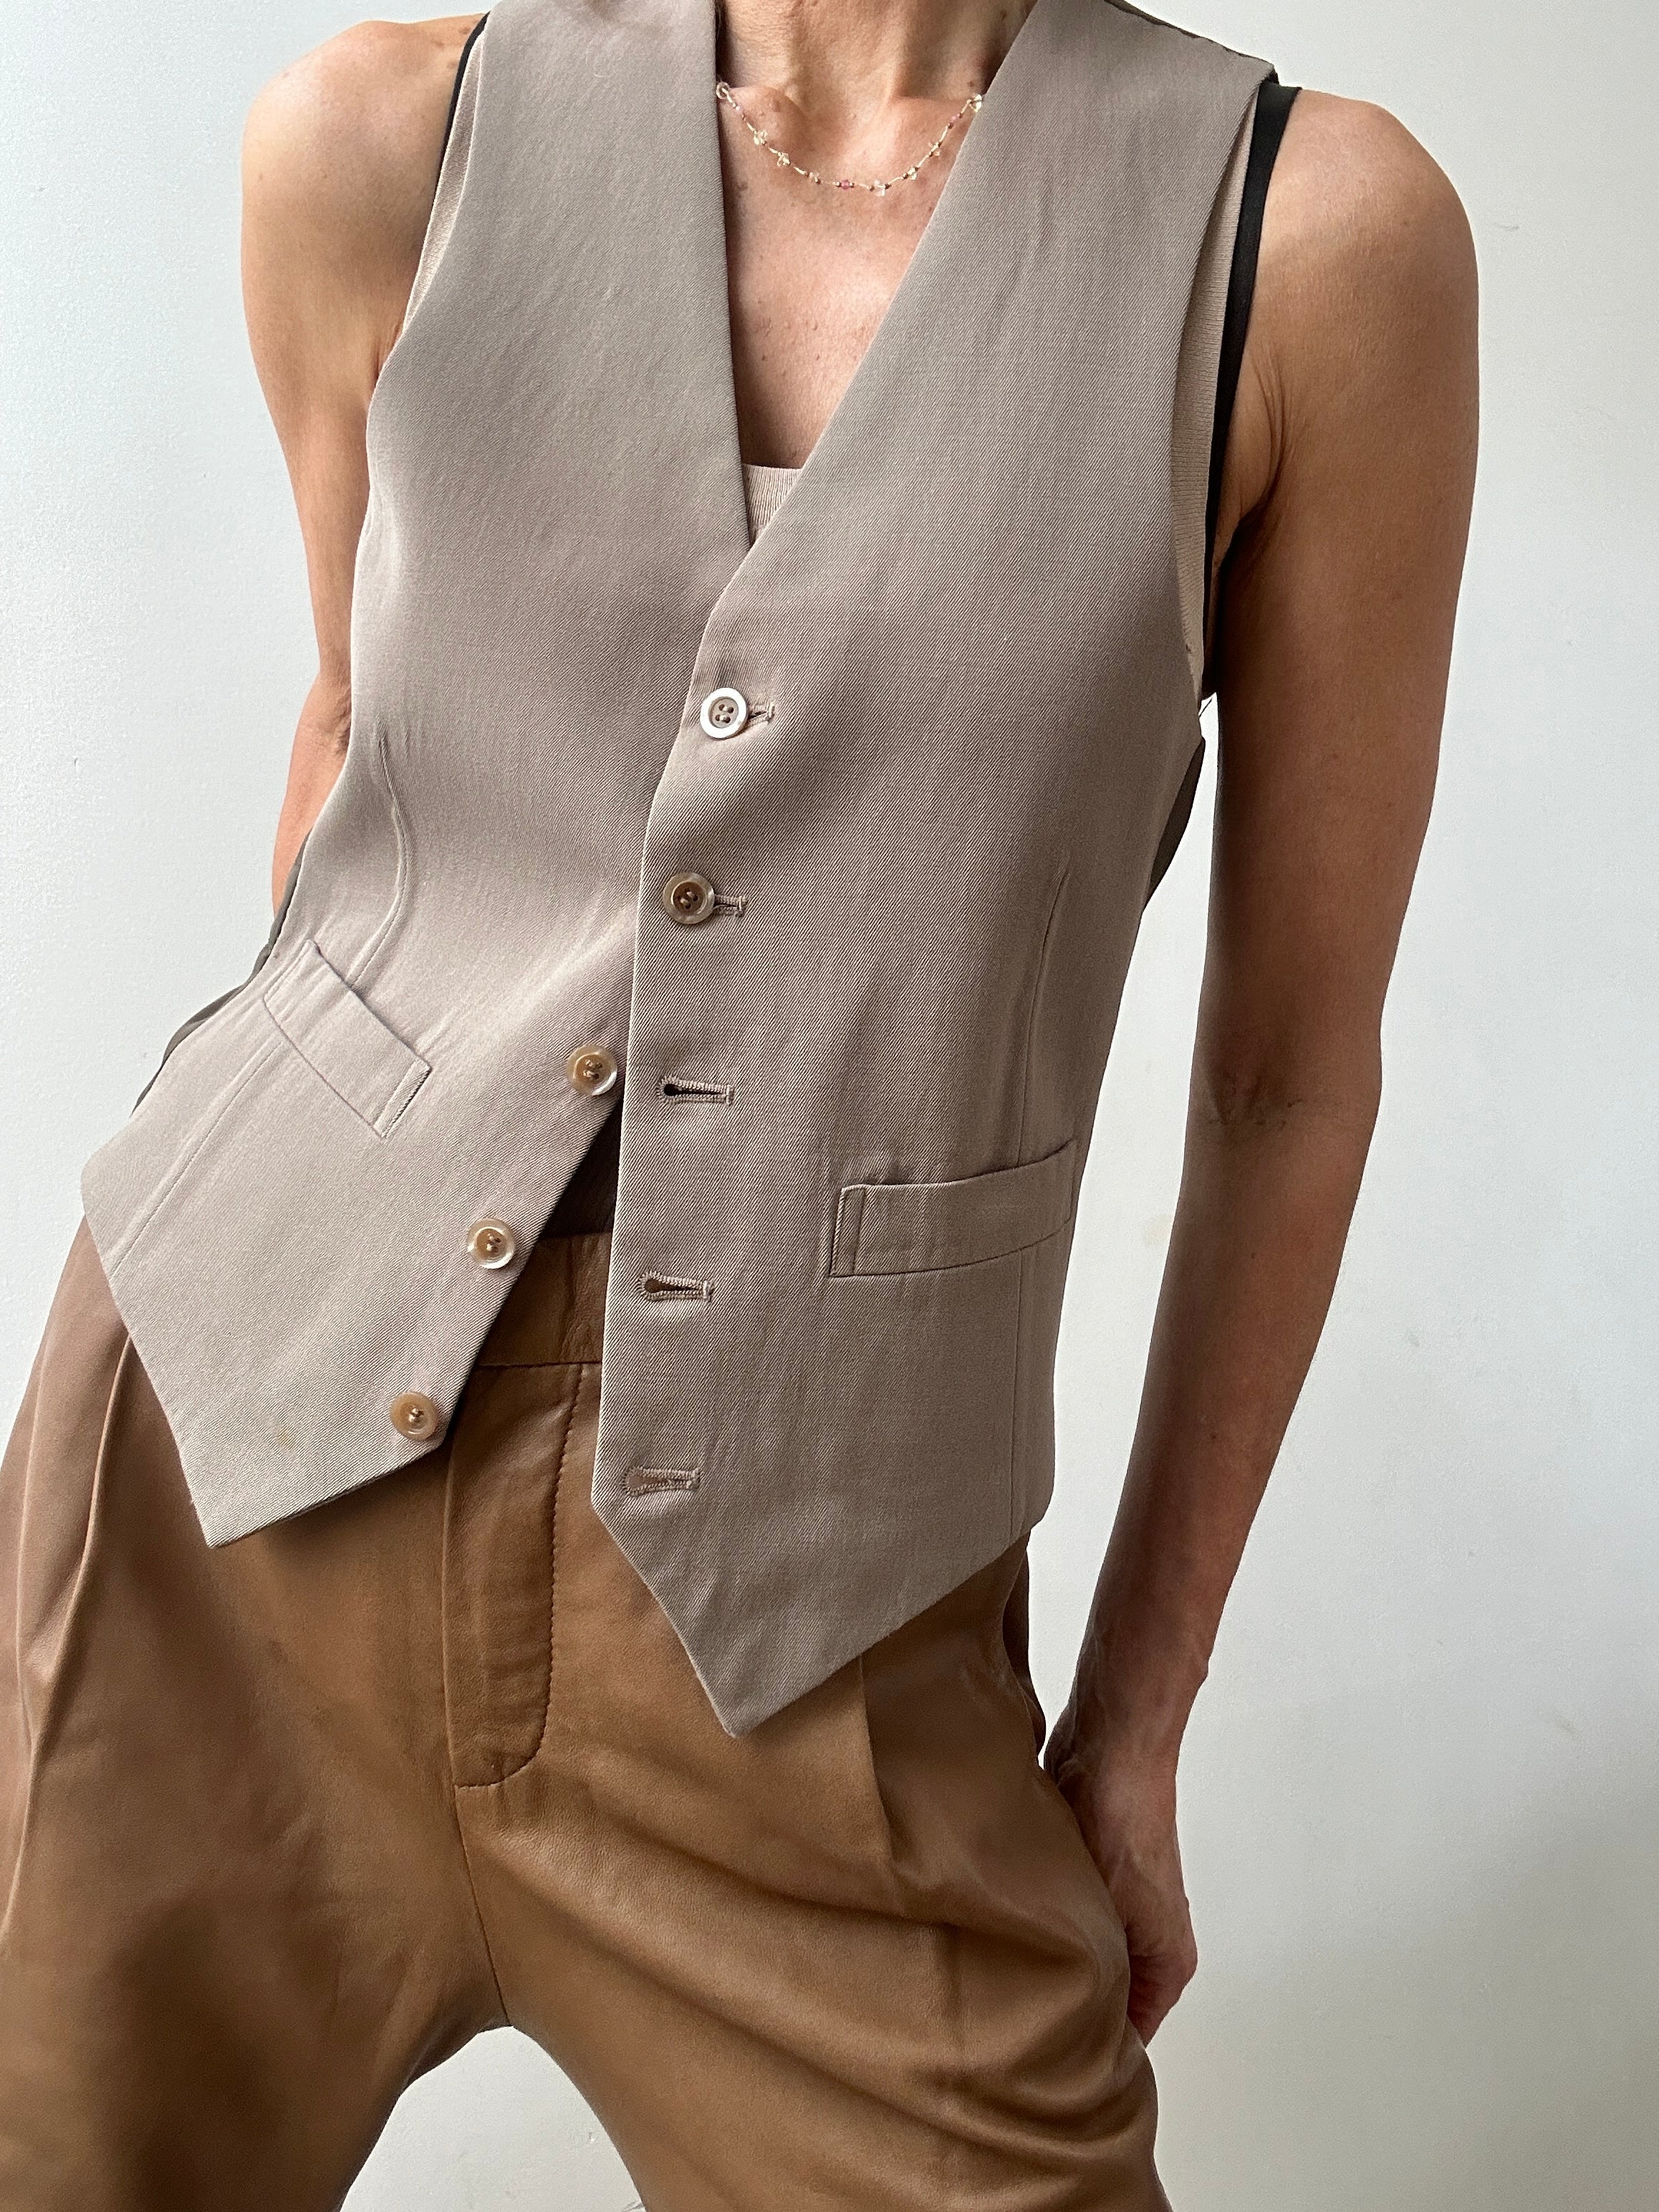 Future Nomads Vests Small Vintage Suit Vest Tan Beige